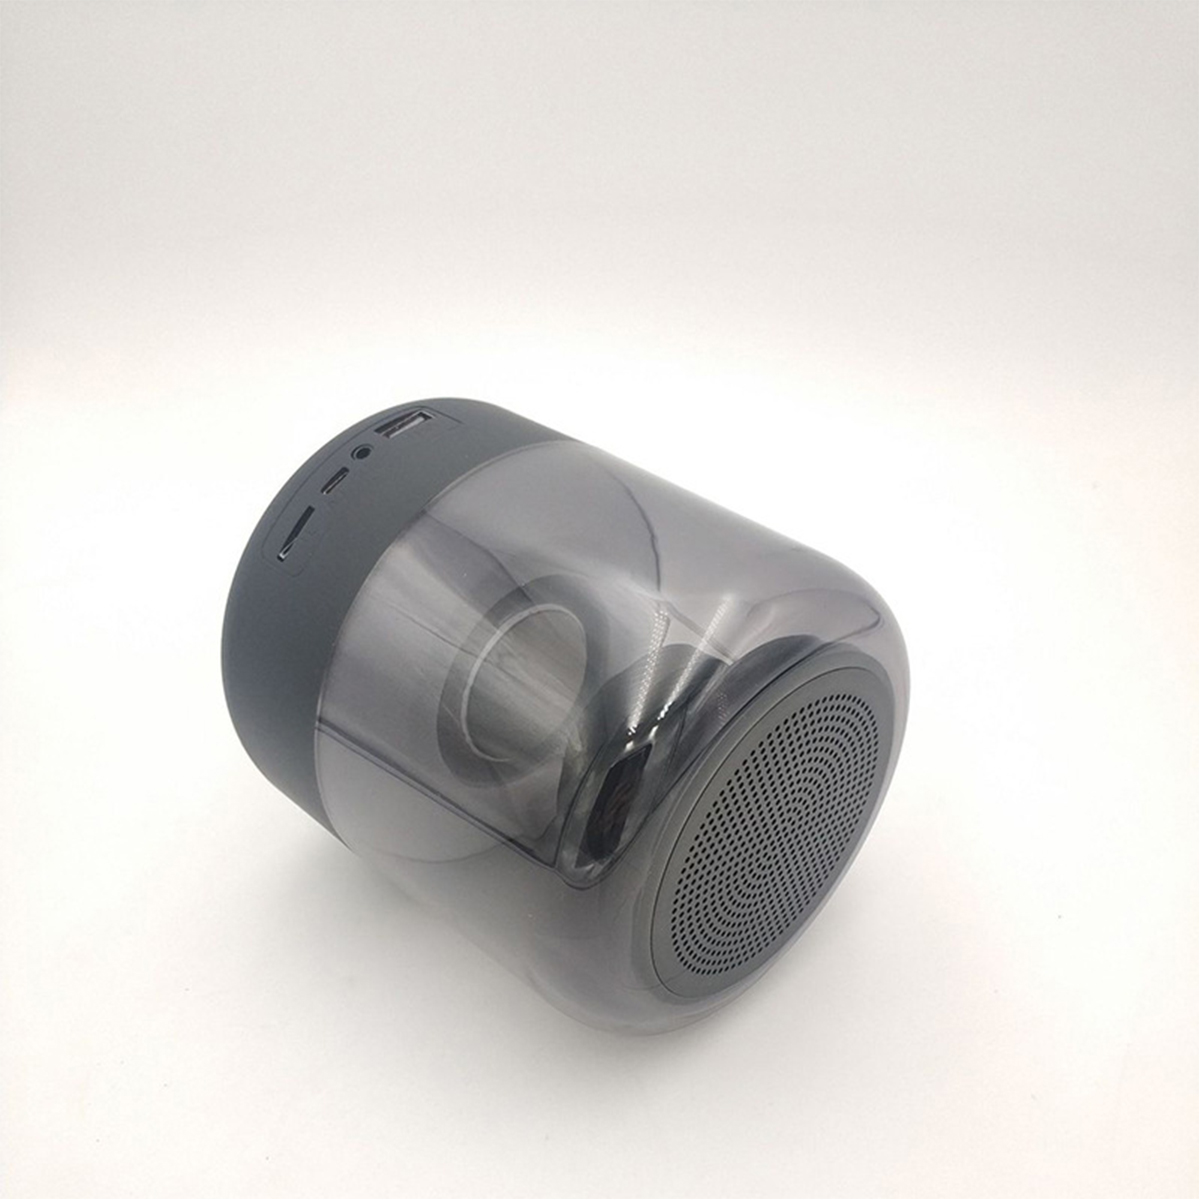 BRIGHTAKE Bluetooth Lautsprecher mit sieben Schwarz Subwoofer Sprachansagen und Farblichtern, Bluetooth-Lautsprecher